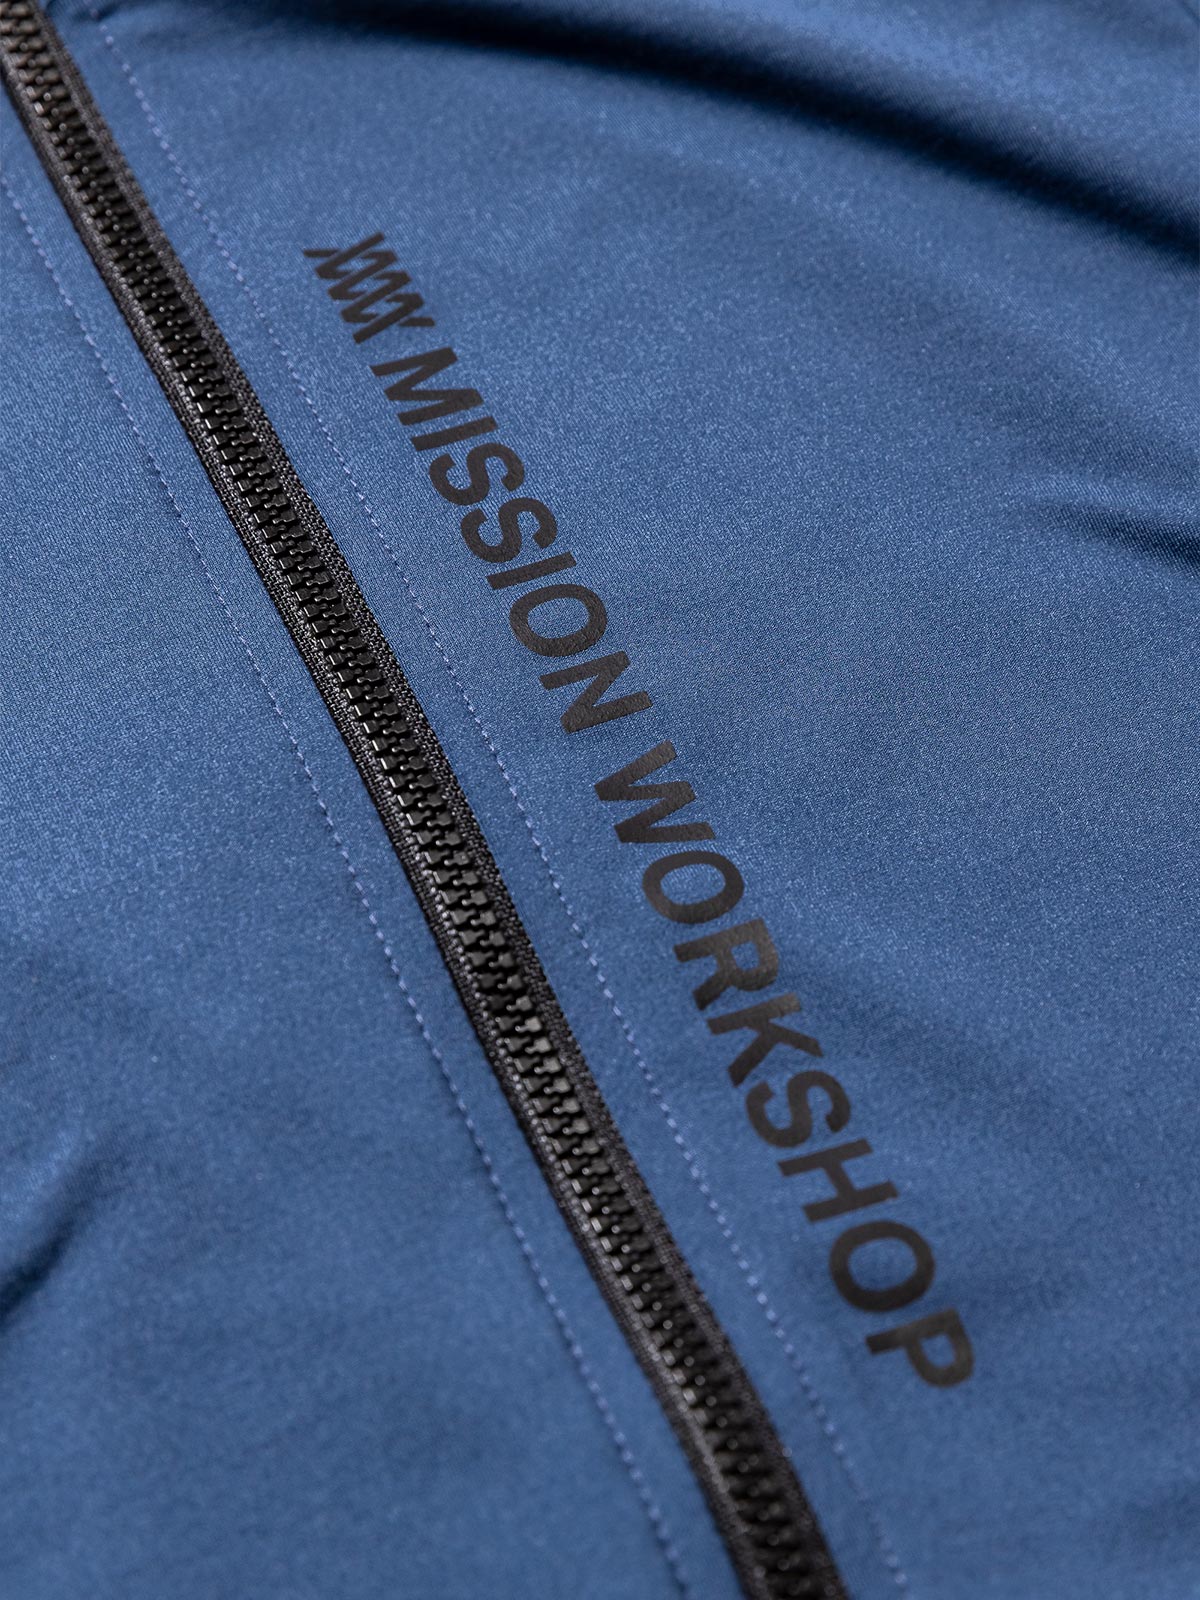 Mission Pro Jersey : LS Women's by Mission Workshop - Bolsas impermeables y ropa técnica - San Francisco y Los Angeles - Construido para durar - Garantizado para siempre